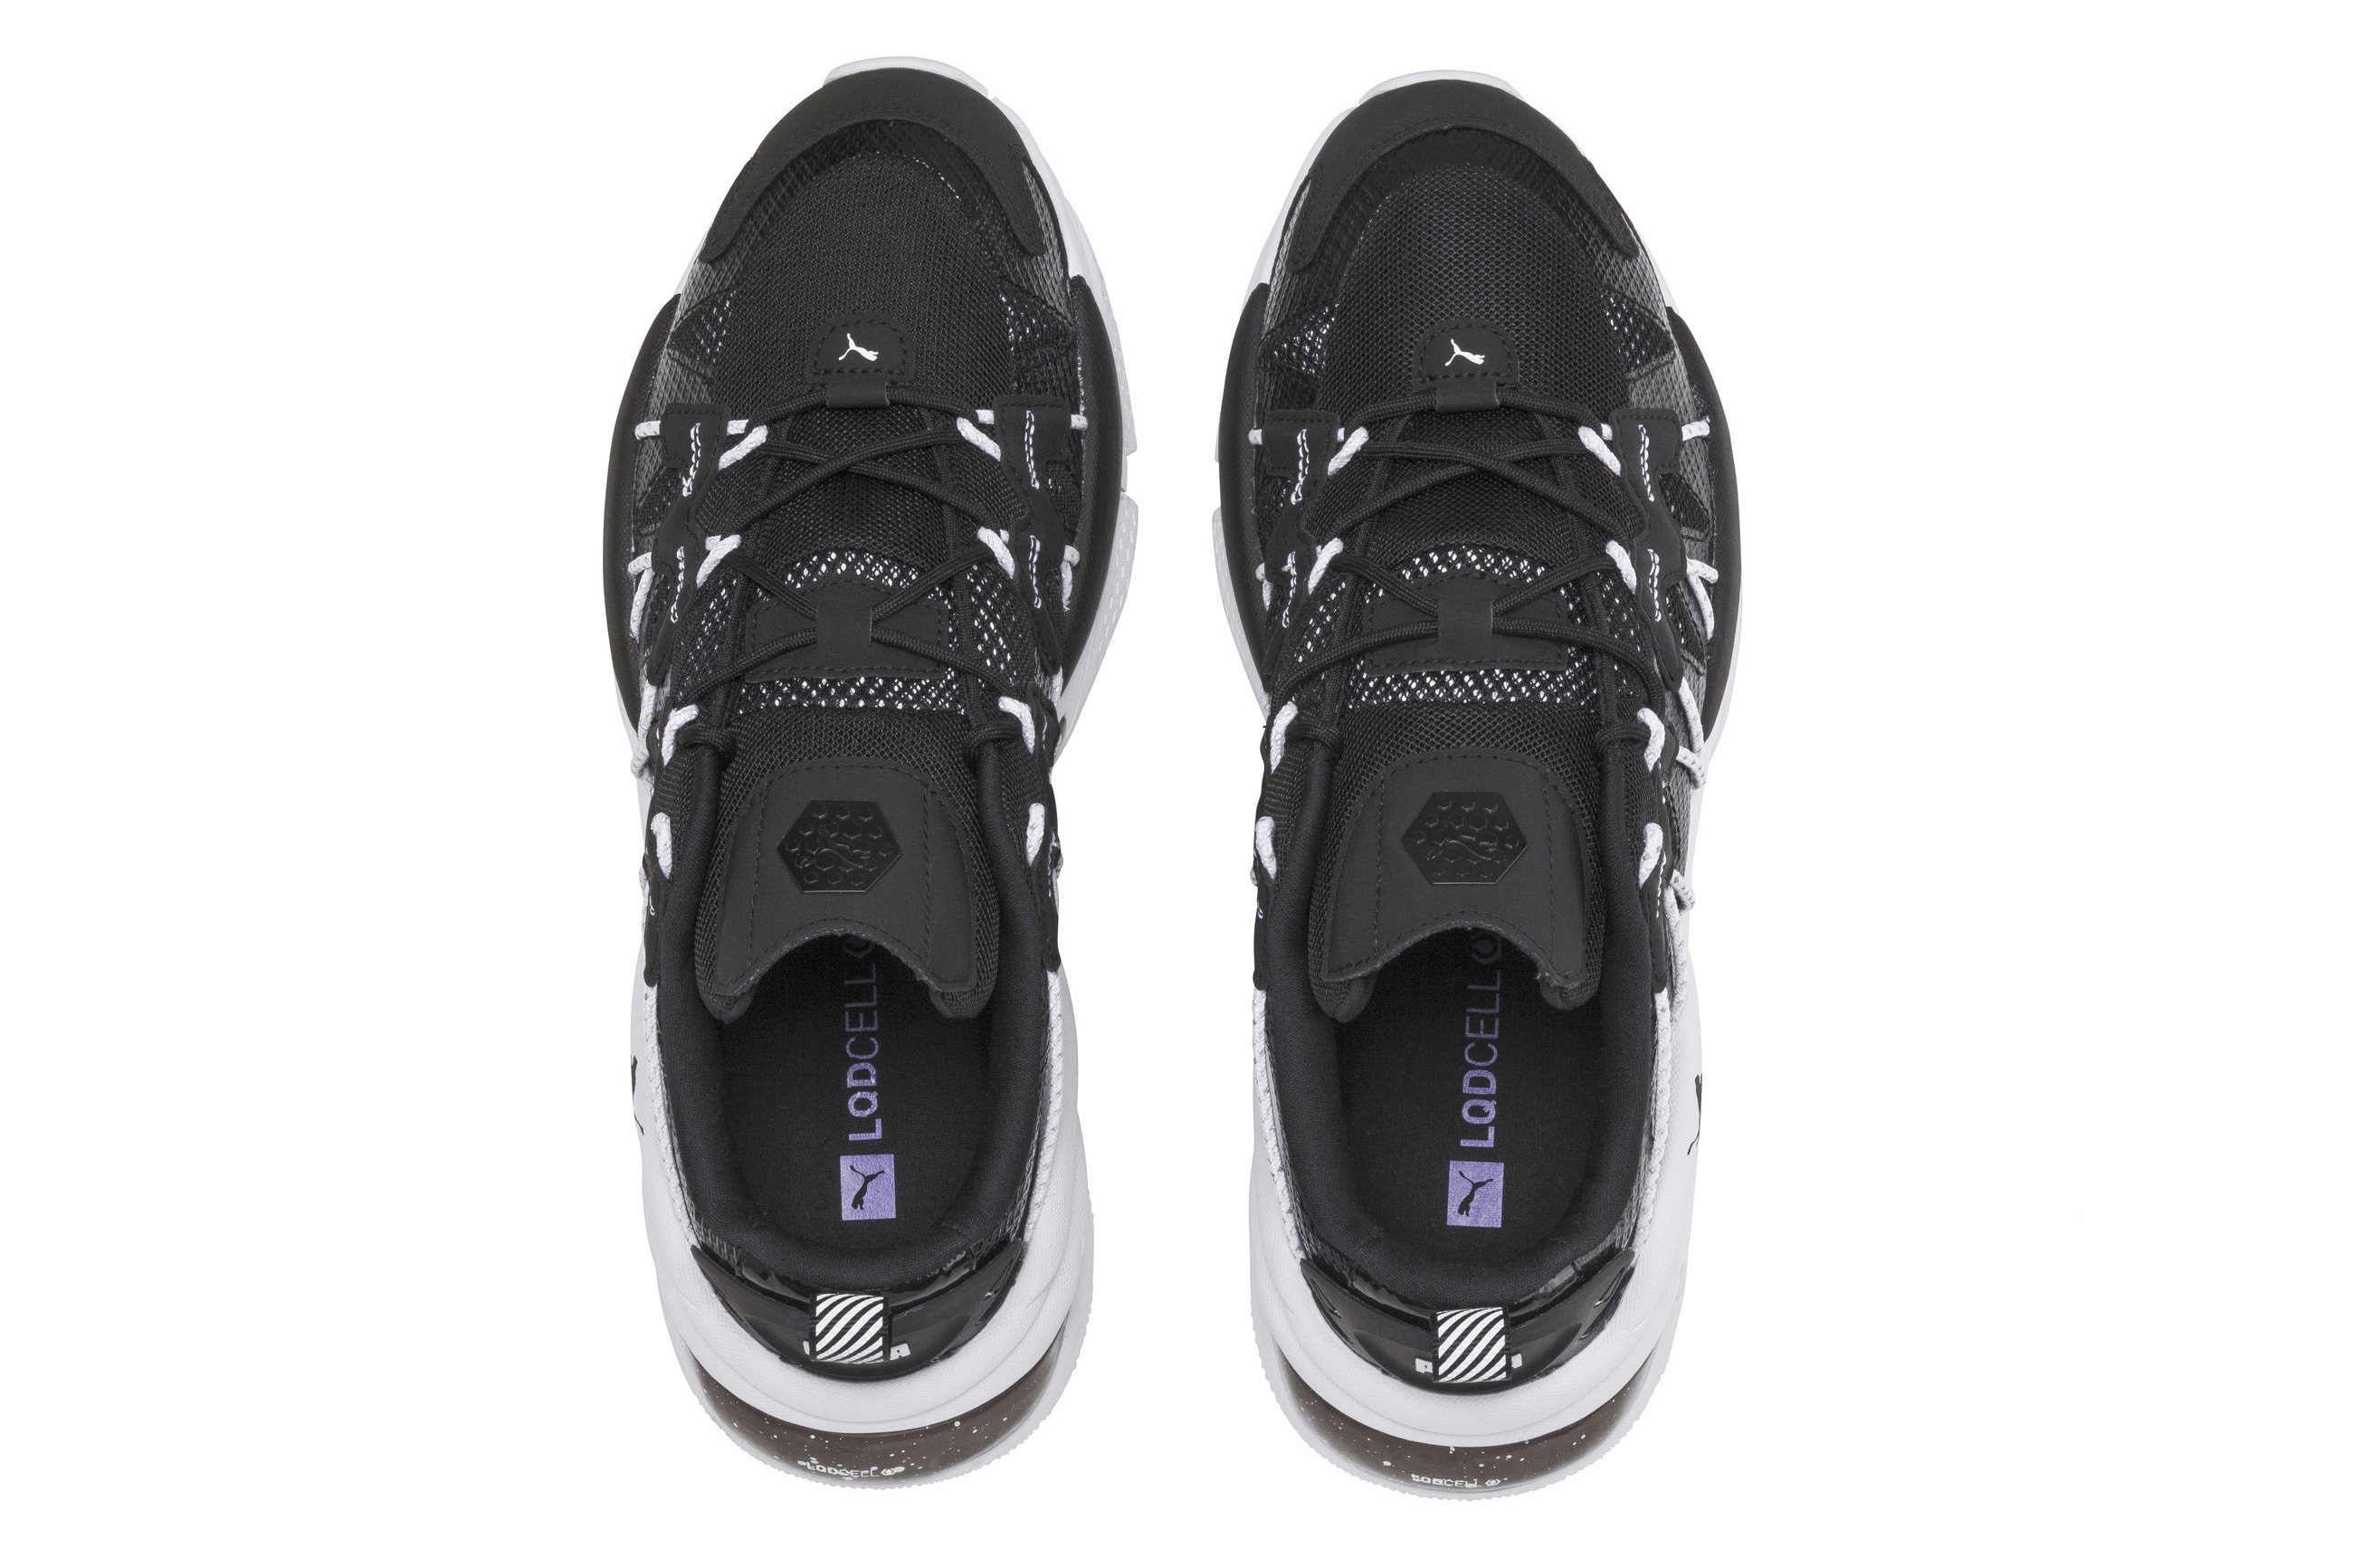 PUMA LQD Cell Omega Density Sneakers Black& White Release